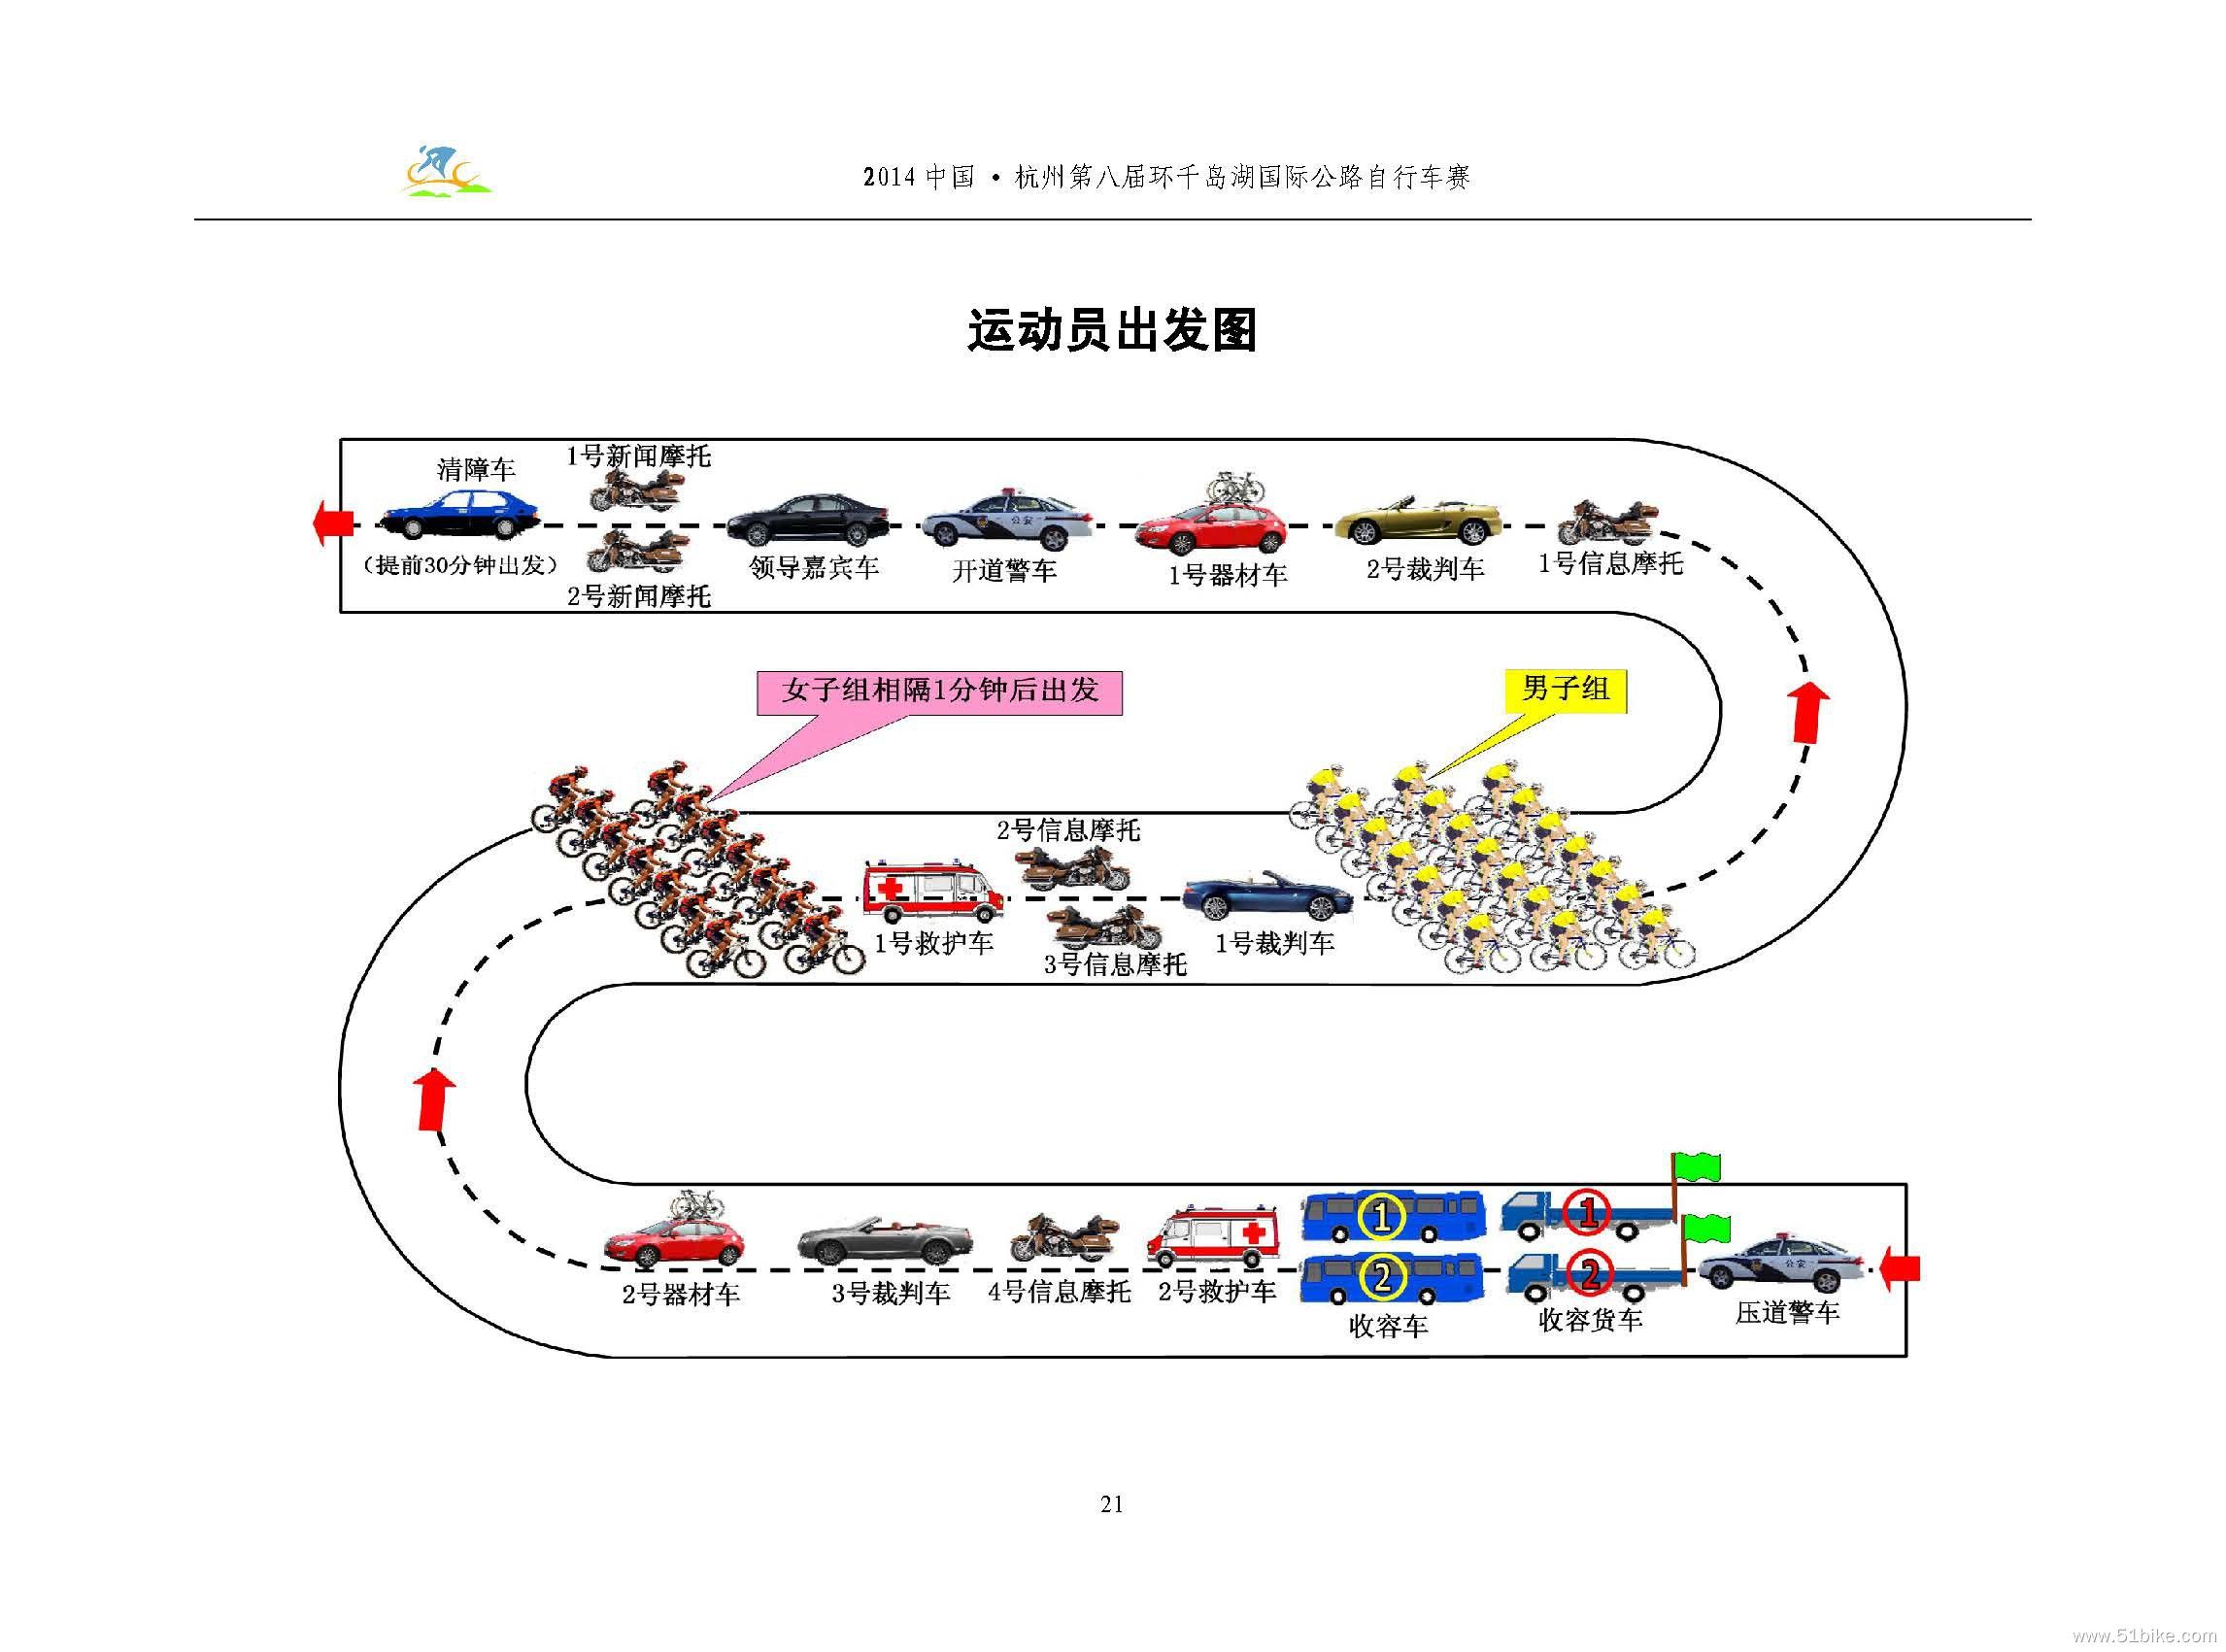 2014自行车赛秩序册（最终稿）_页面_22.jpg